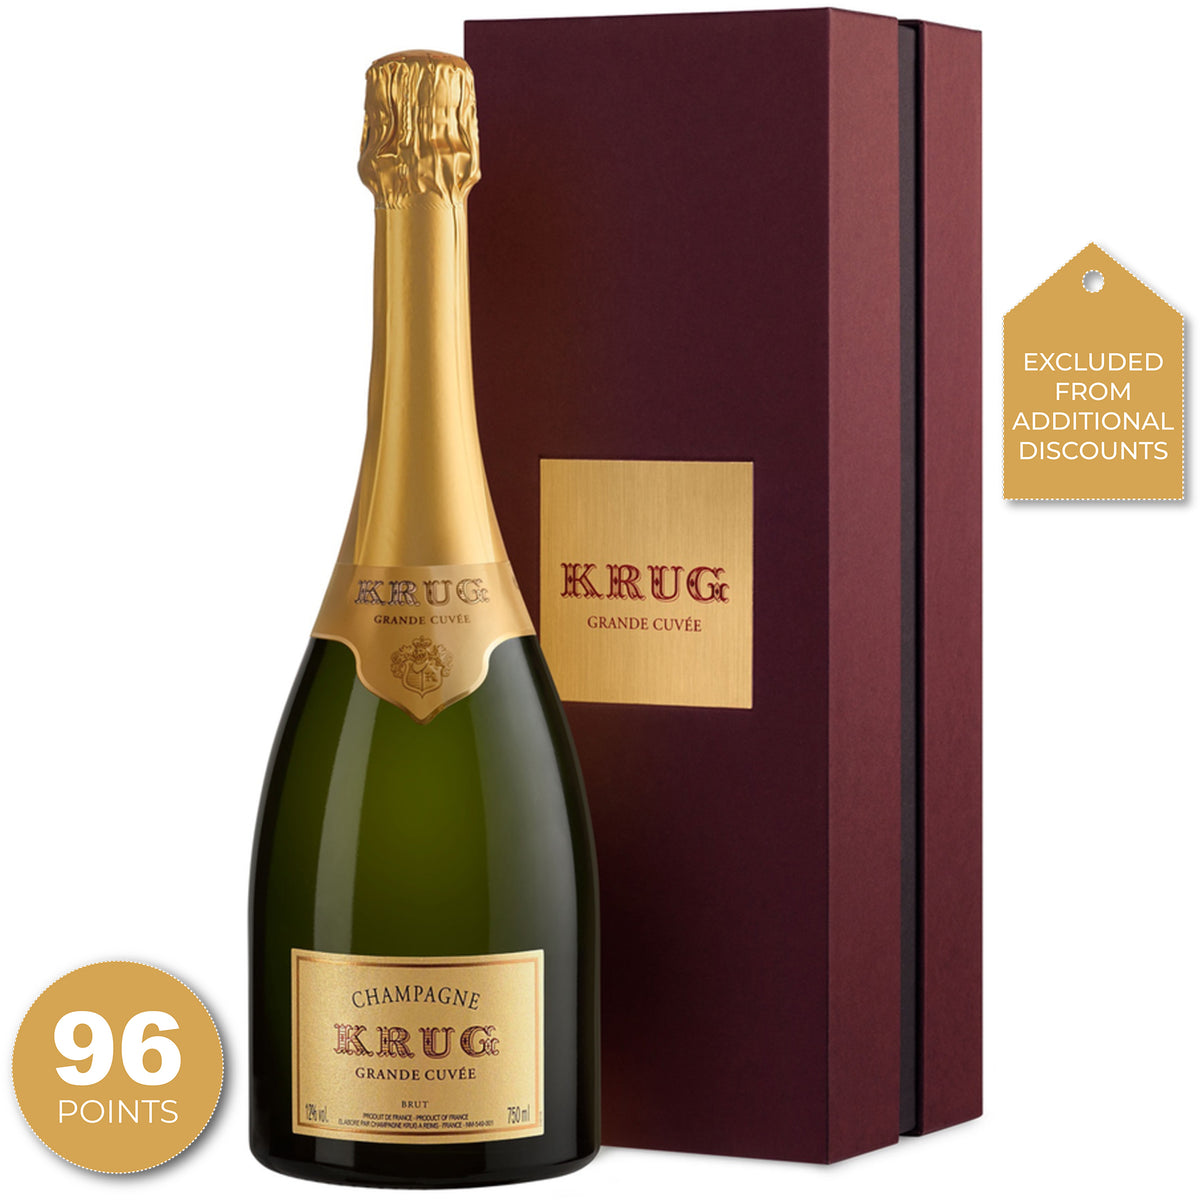 Krug Grand Cuvee Champagne